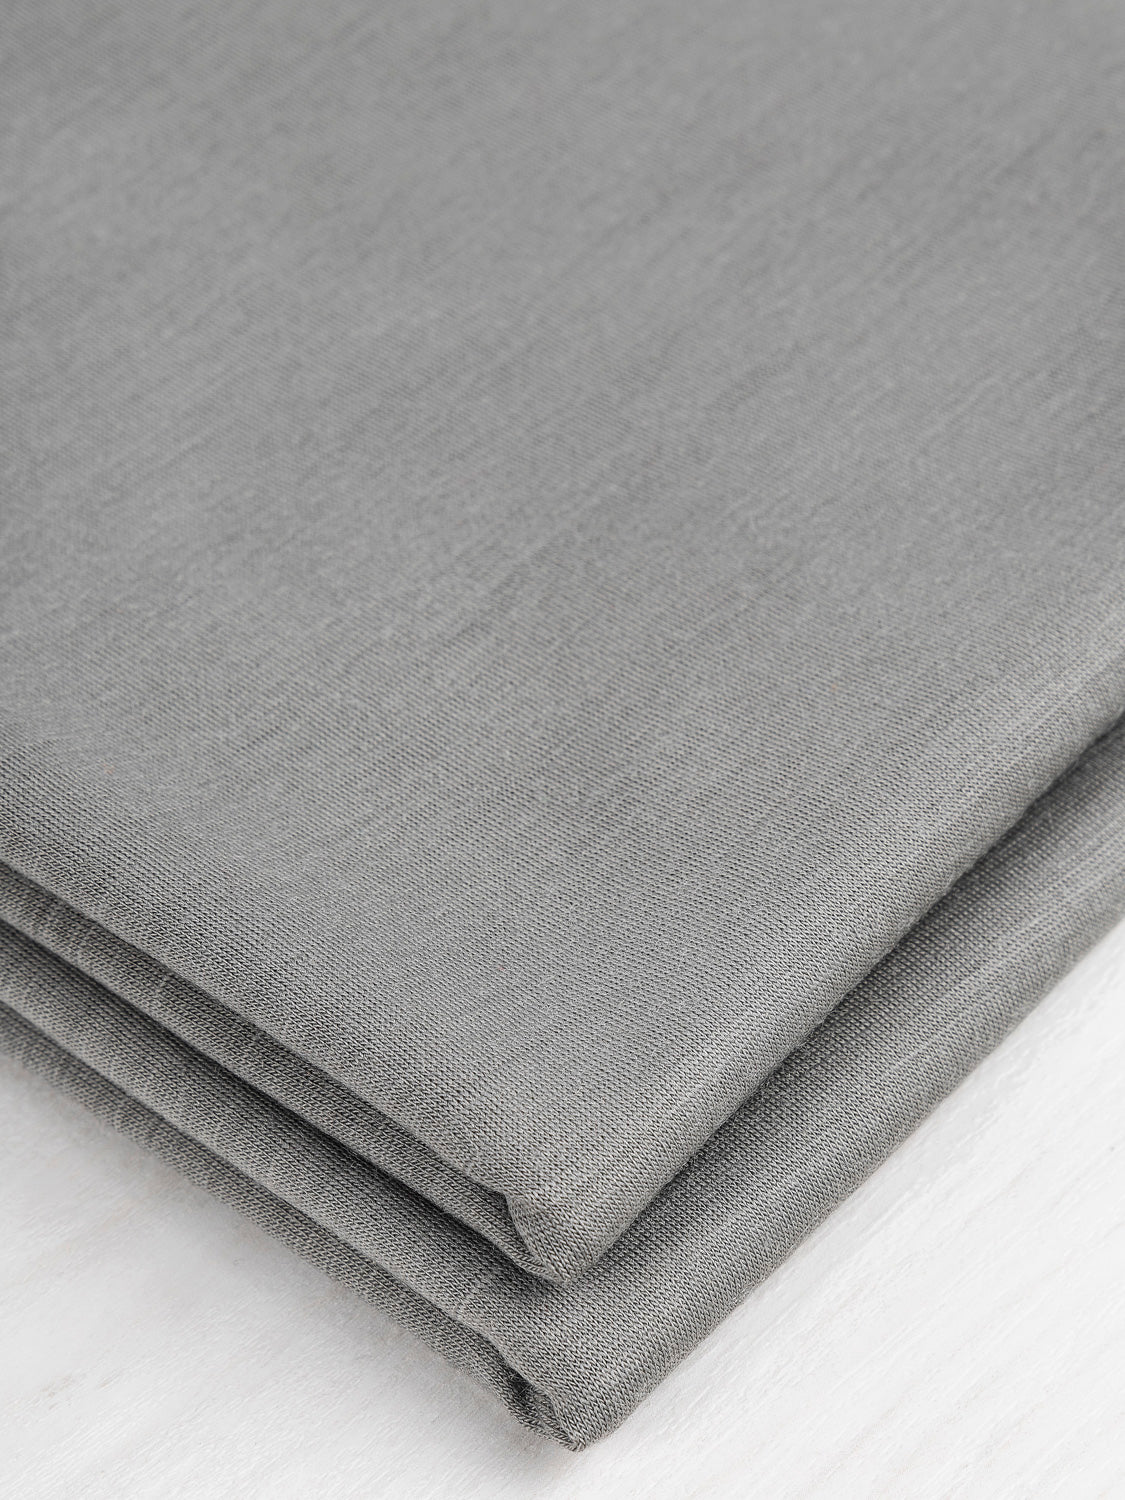 Wool Jersey Knit Deadstock - Grey | Core Fabrics